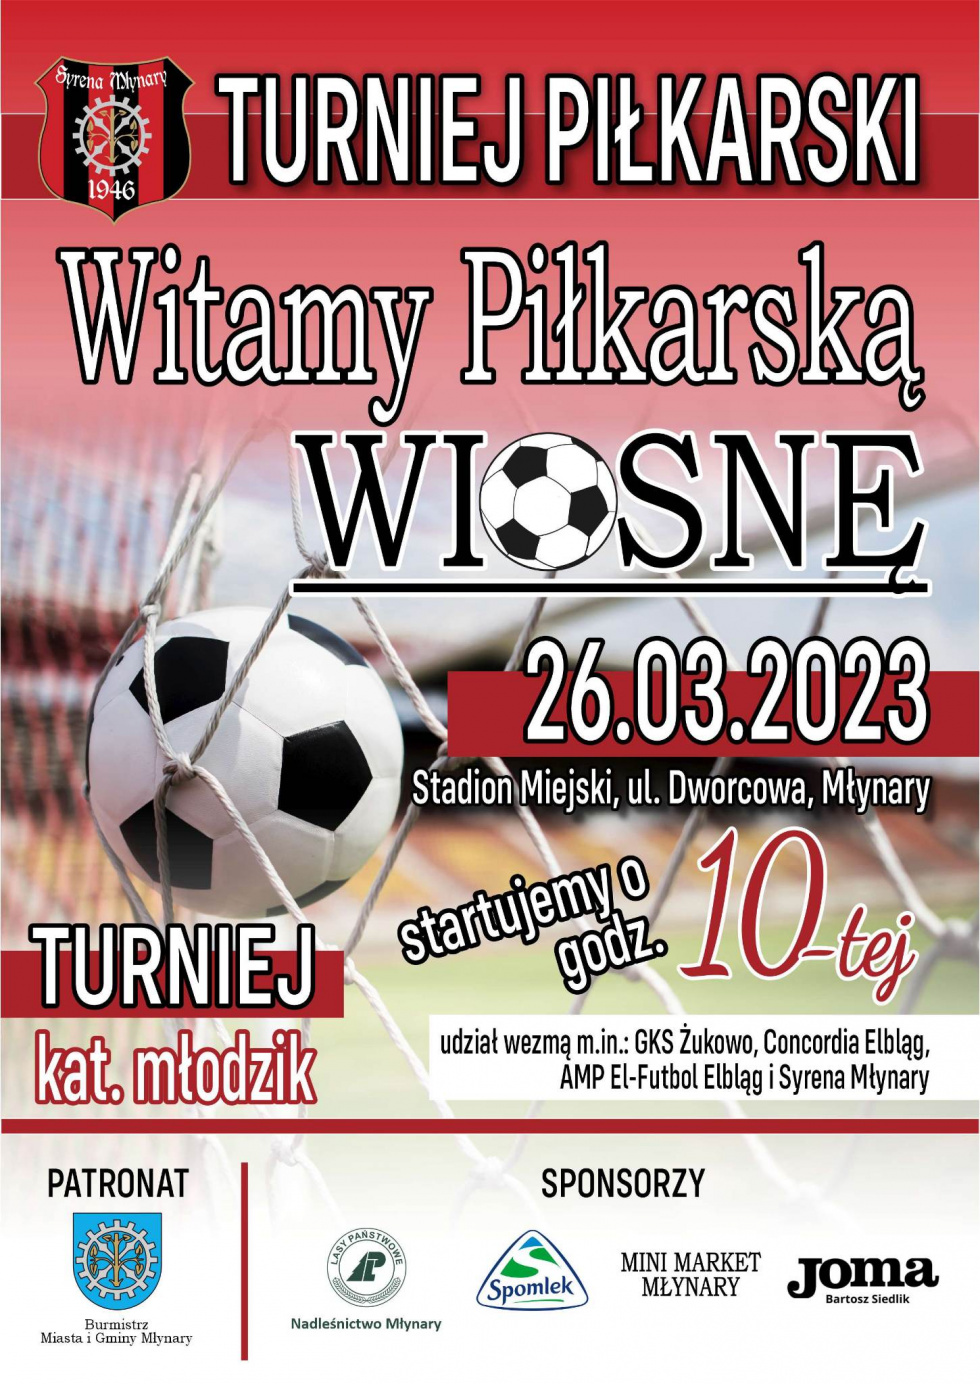 Turniej piłkarski - "Witamy Piłkarską Wiosne" - 26.03.2023 r.